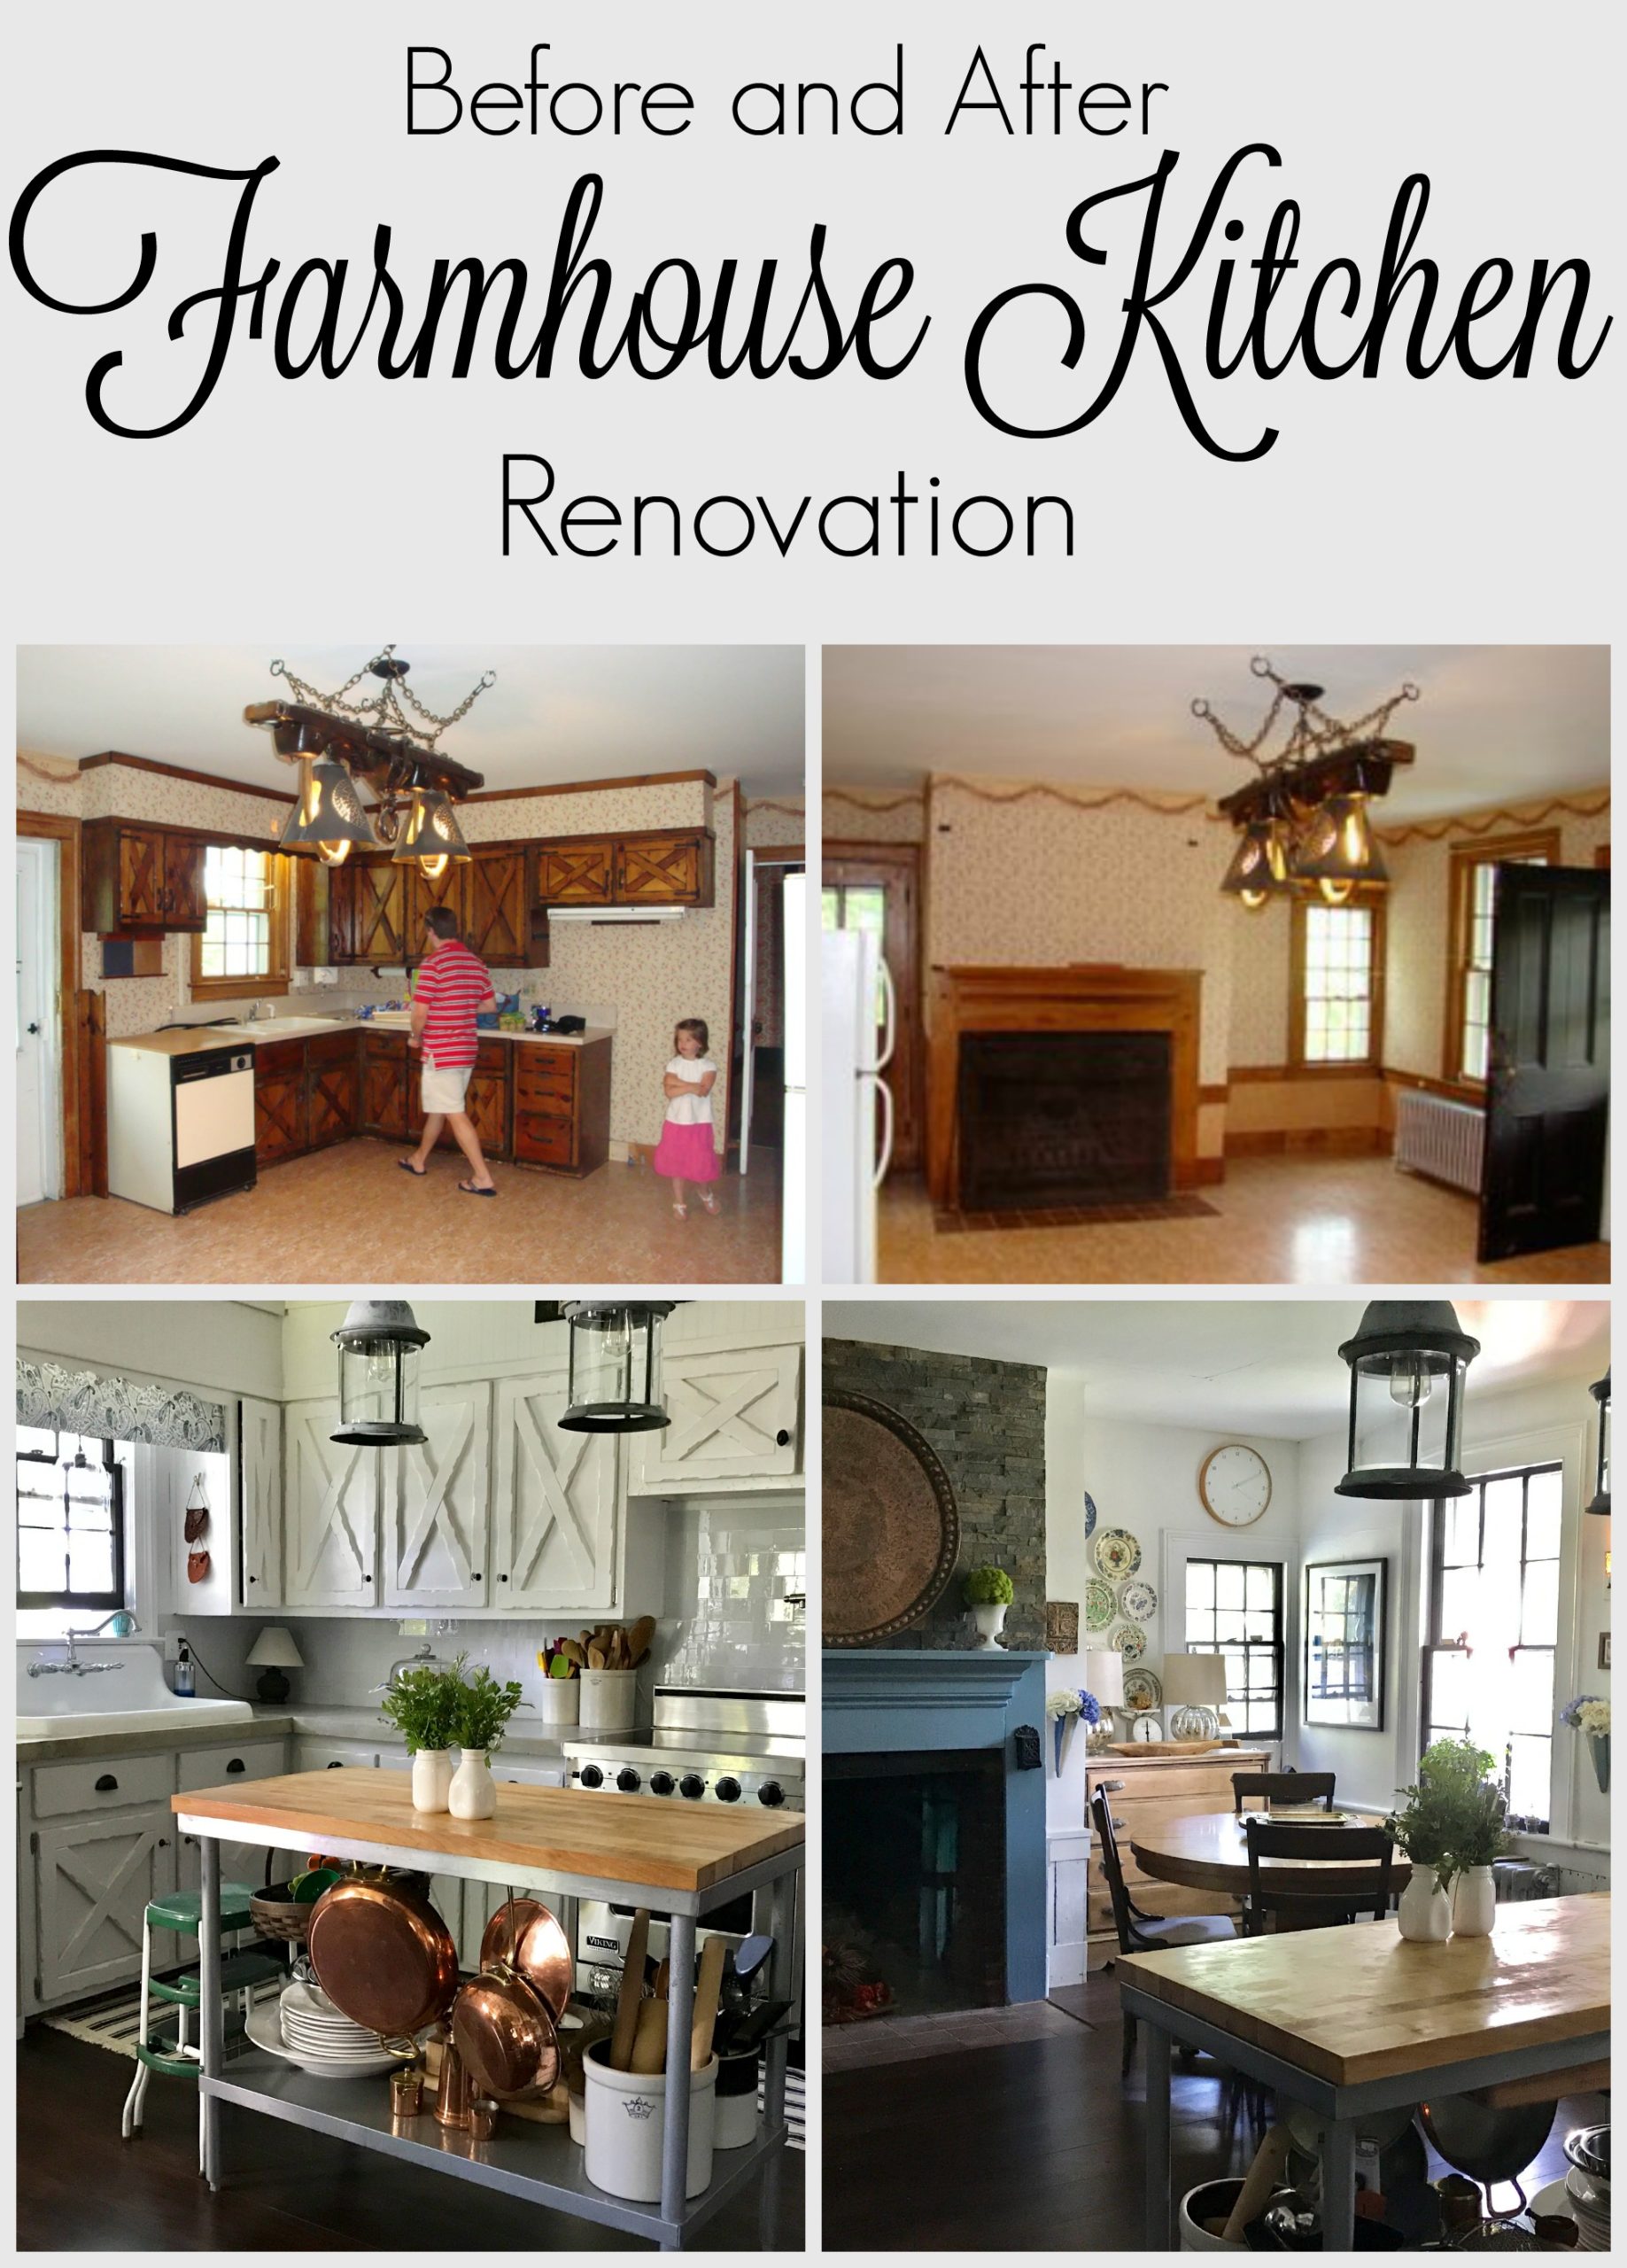 The Kitchen - farmhouse kitchen renovation collage